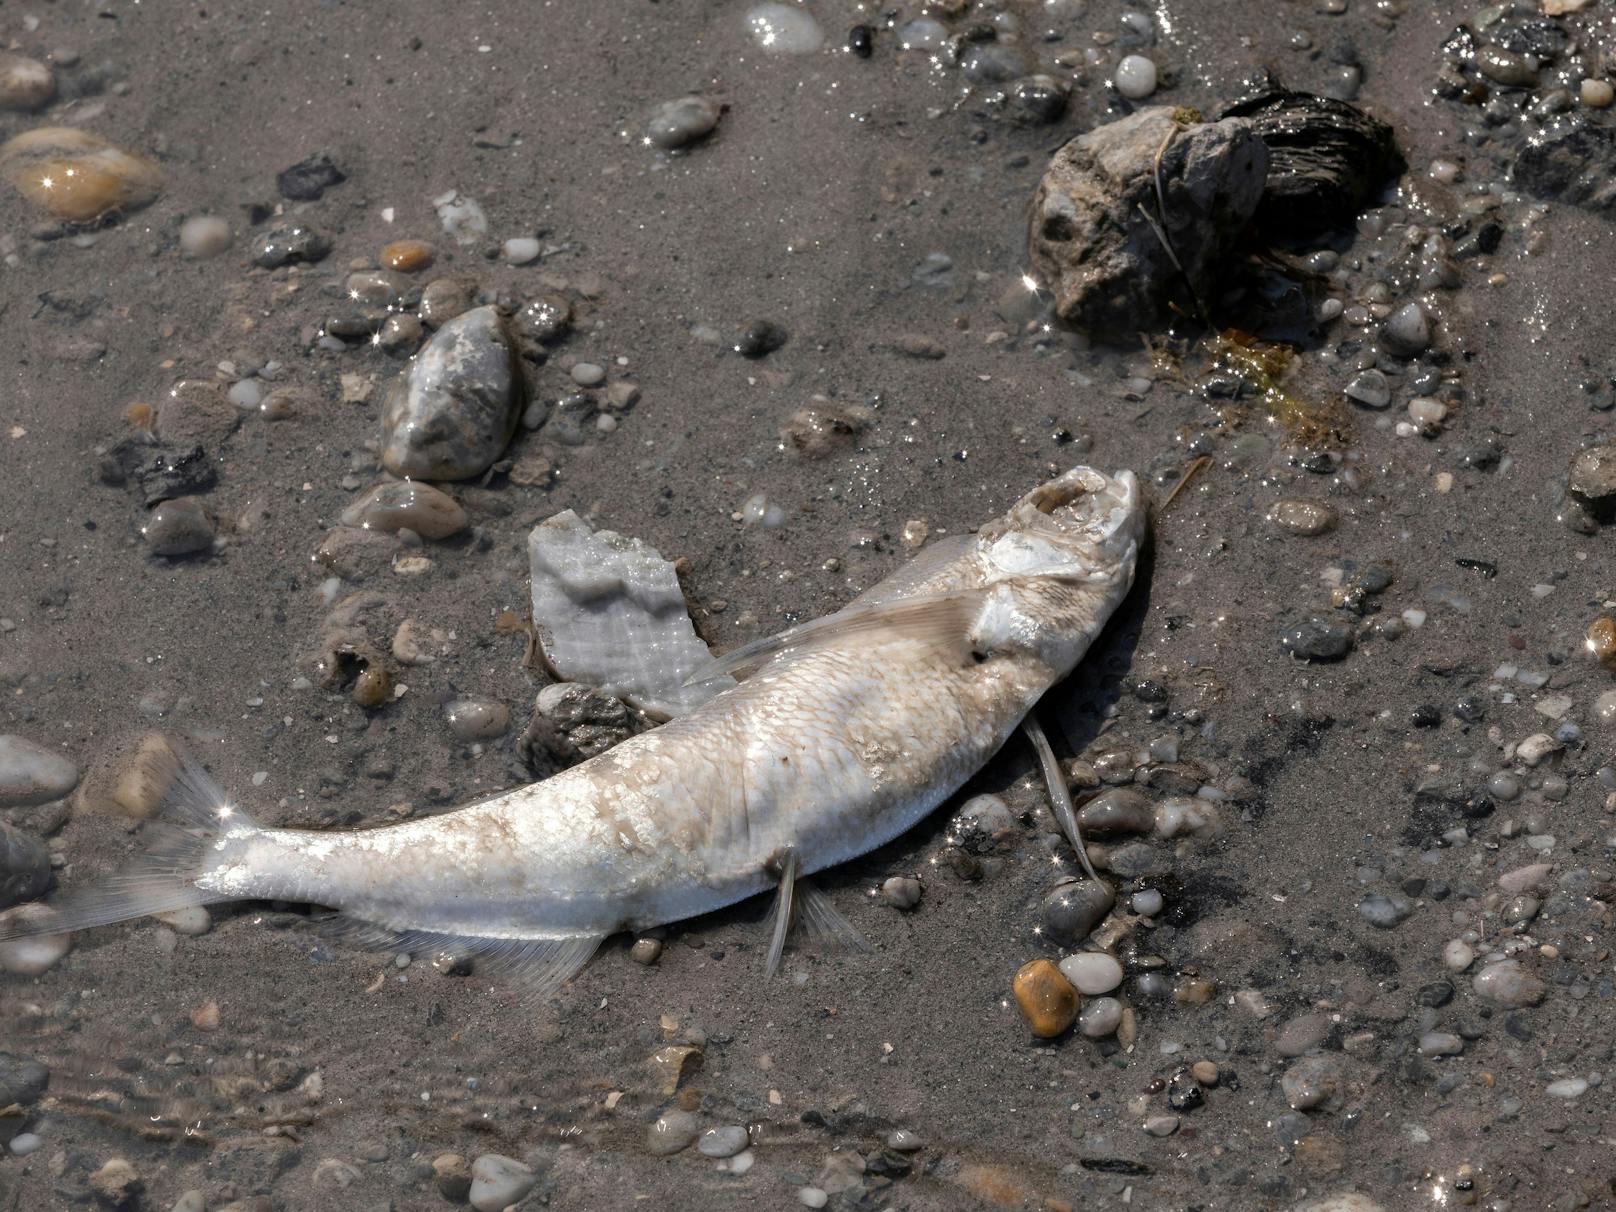 Der Pegel des Neusiedler Sees im Burgenland erreicht durch die anhaltende Trockenheit einen historischen Tiefstand. Besonders schlimm ist die Situation im Seewinkel, viele Fische sterben.